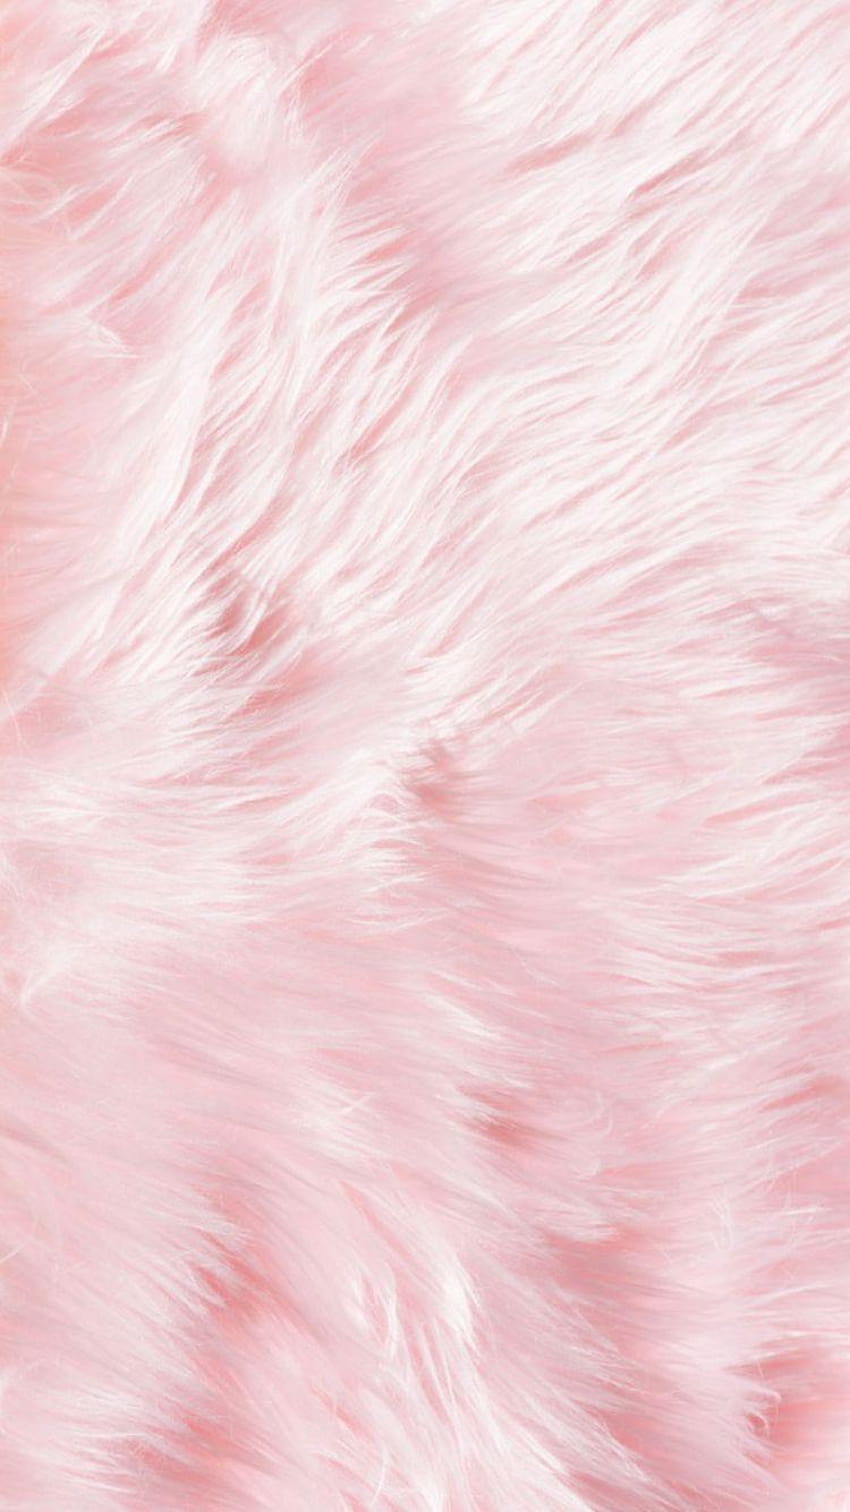 iPhone de pele fofa rosa …, rosa bebê Papel de parede de celular HD